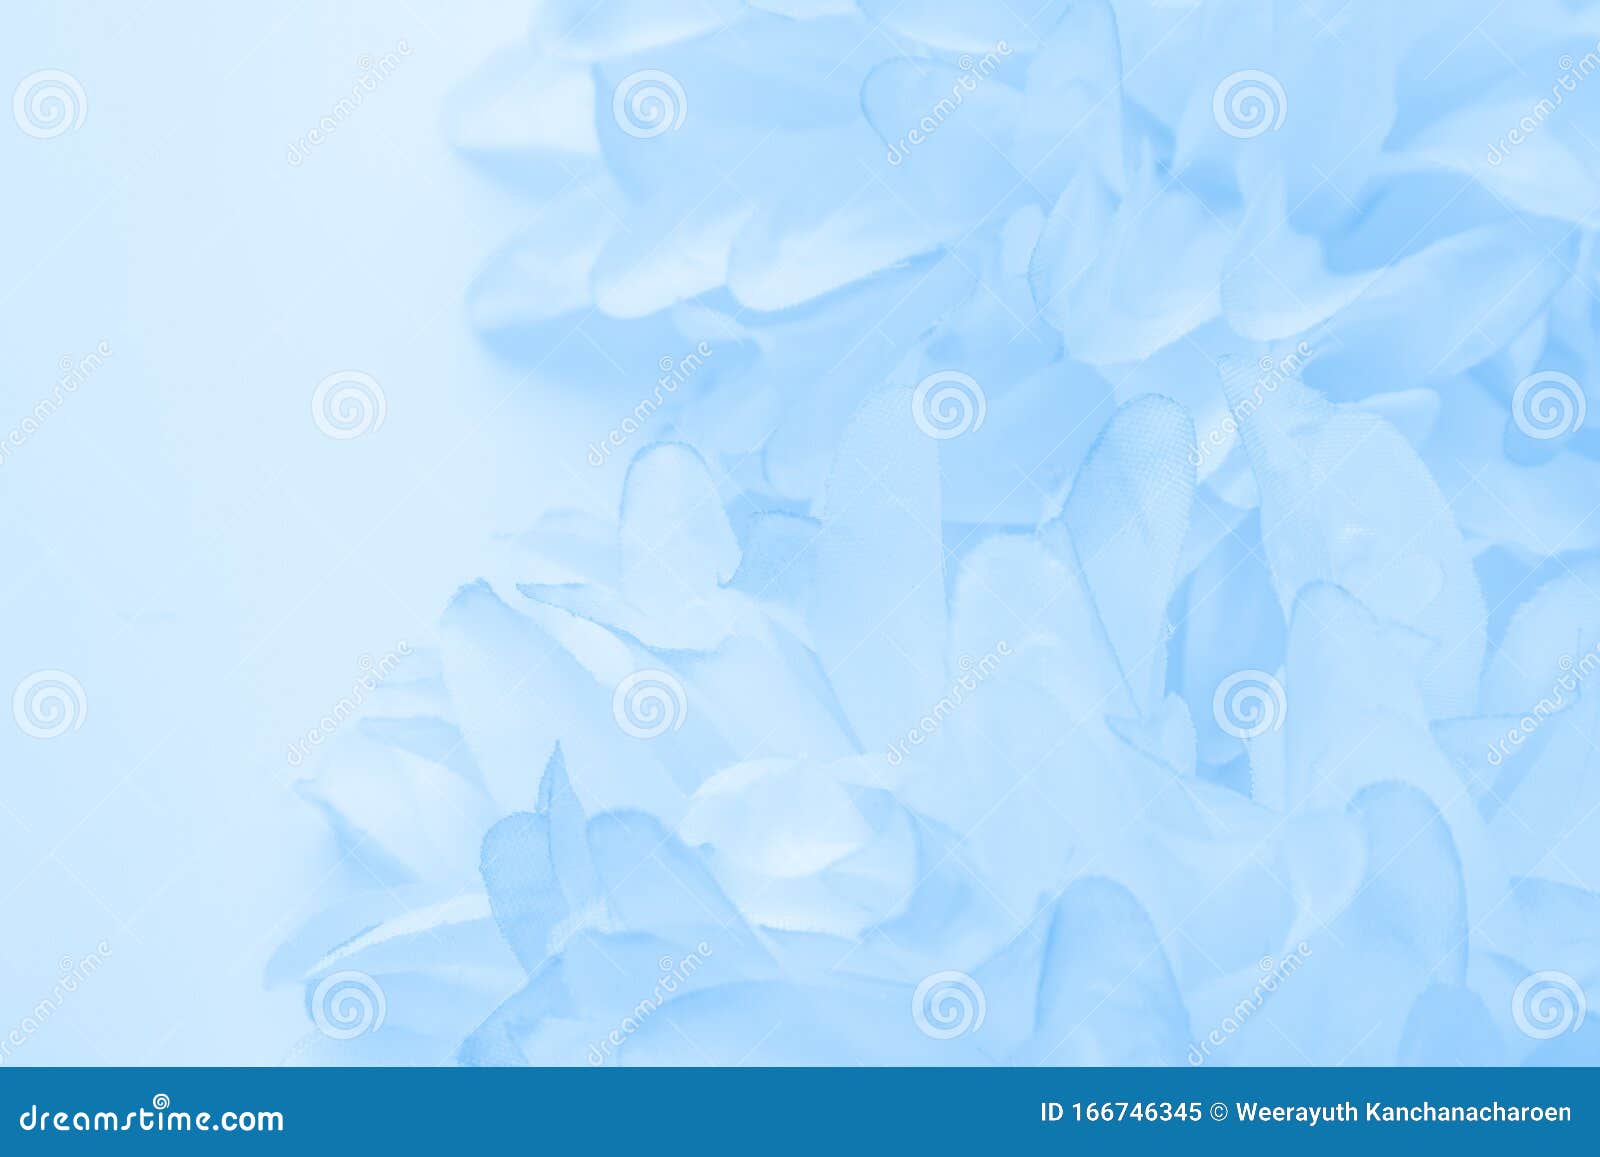 Sắc tím và xanh lá cây của hoa tím xanh trên nền trắng tạo nên một tác phẩm nghệ thuật tuyệt đẹp. Hãy xem hình ảnh để trải nghiệm sự thanh lịch và tinh tế của chúng.